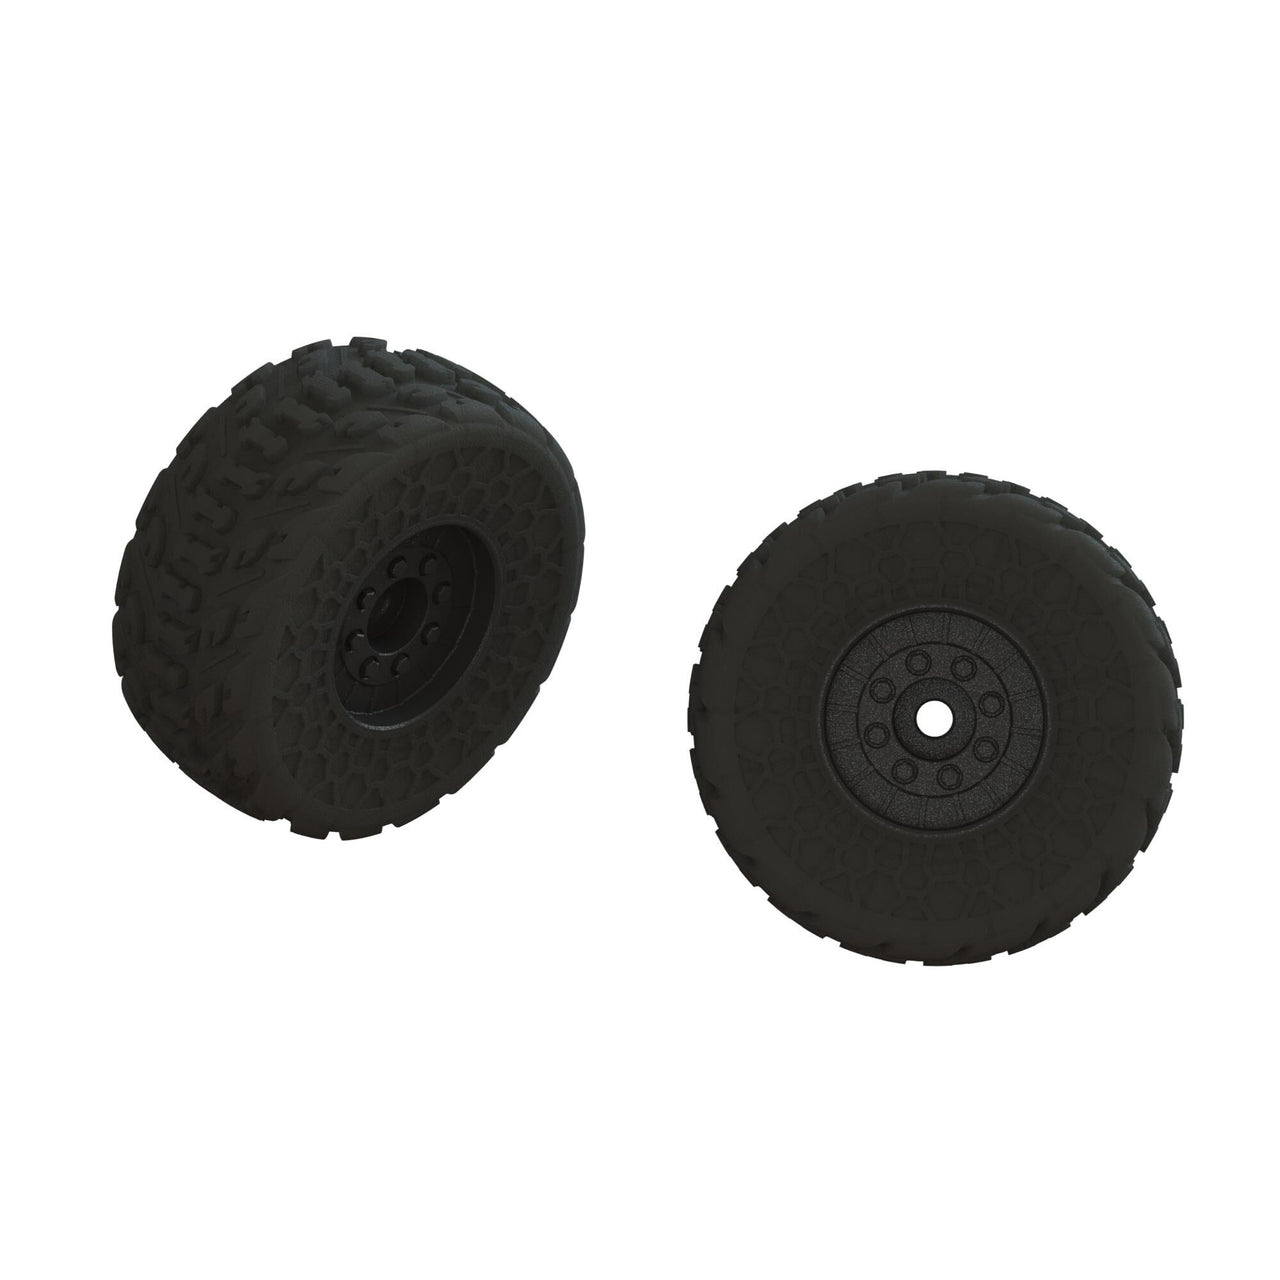 ARA550107 dBoots FIRETEAM Tire Set, Glued (2)